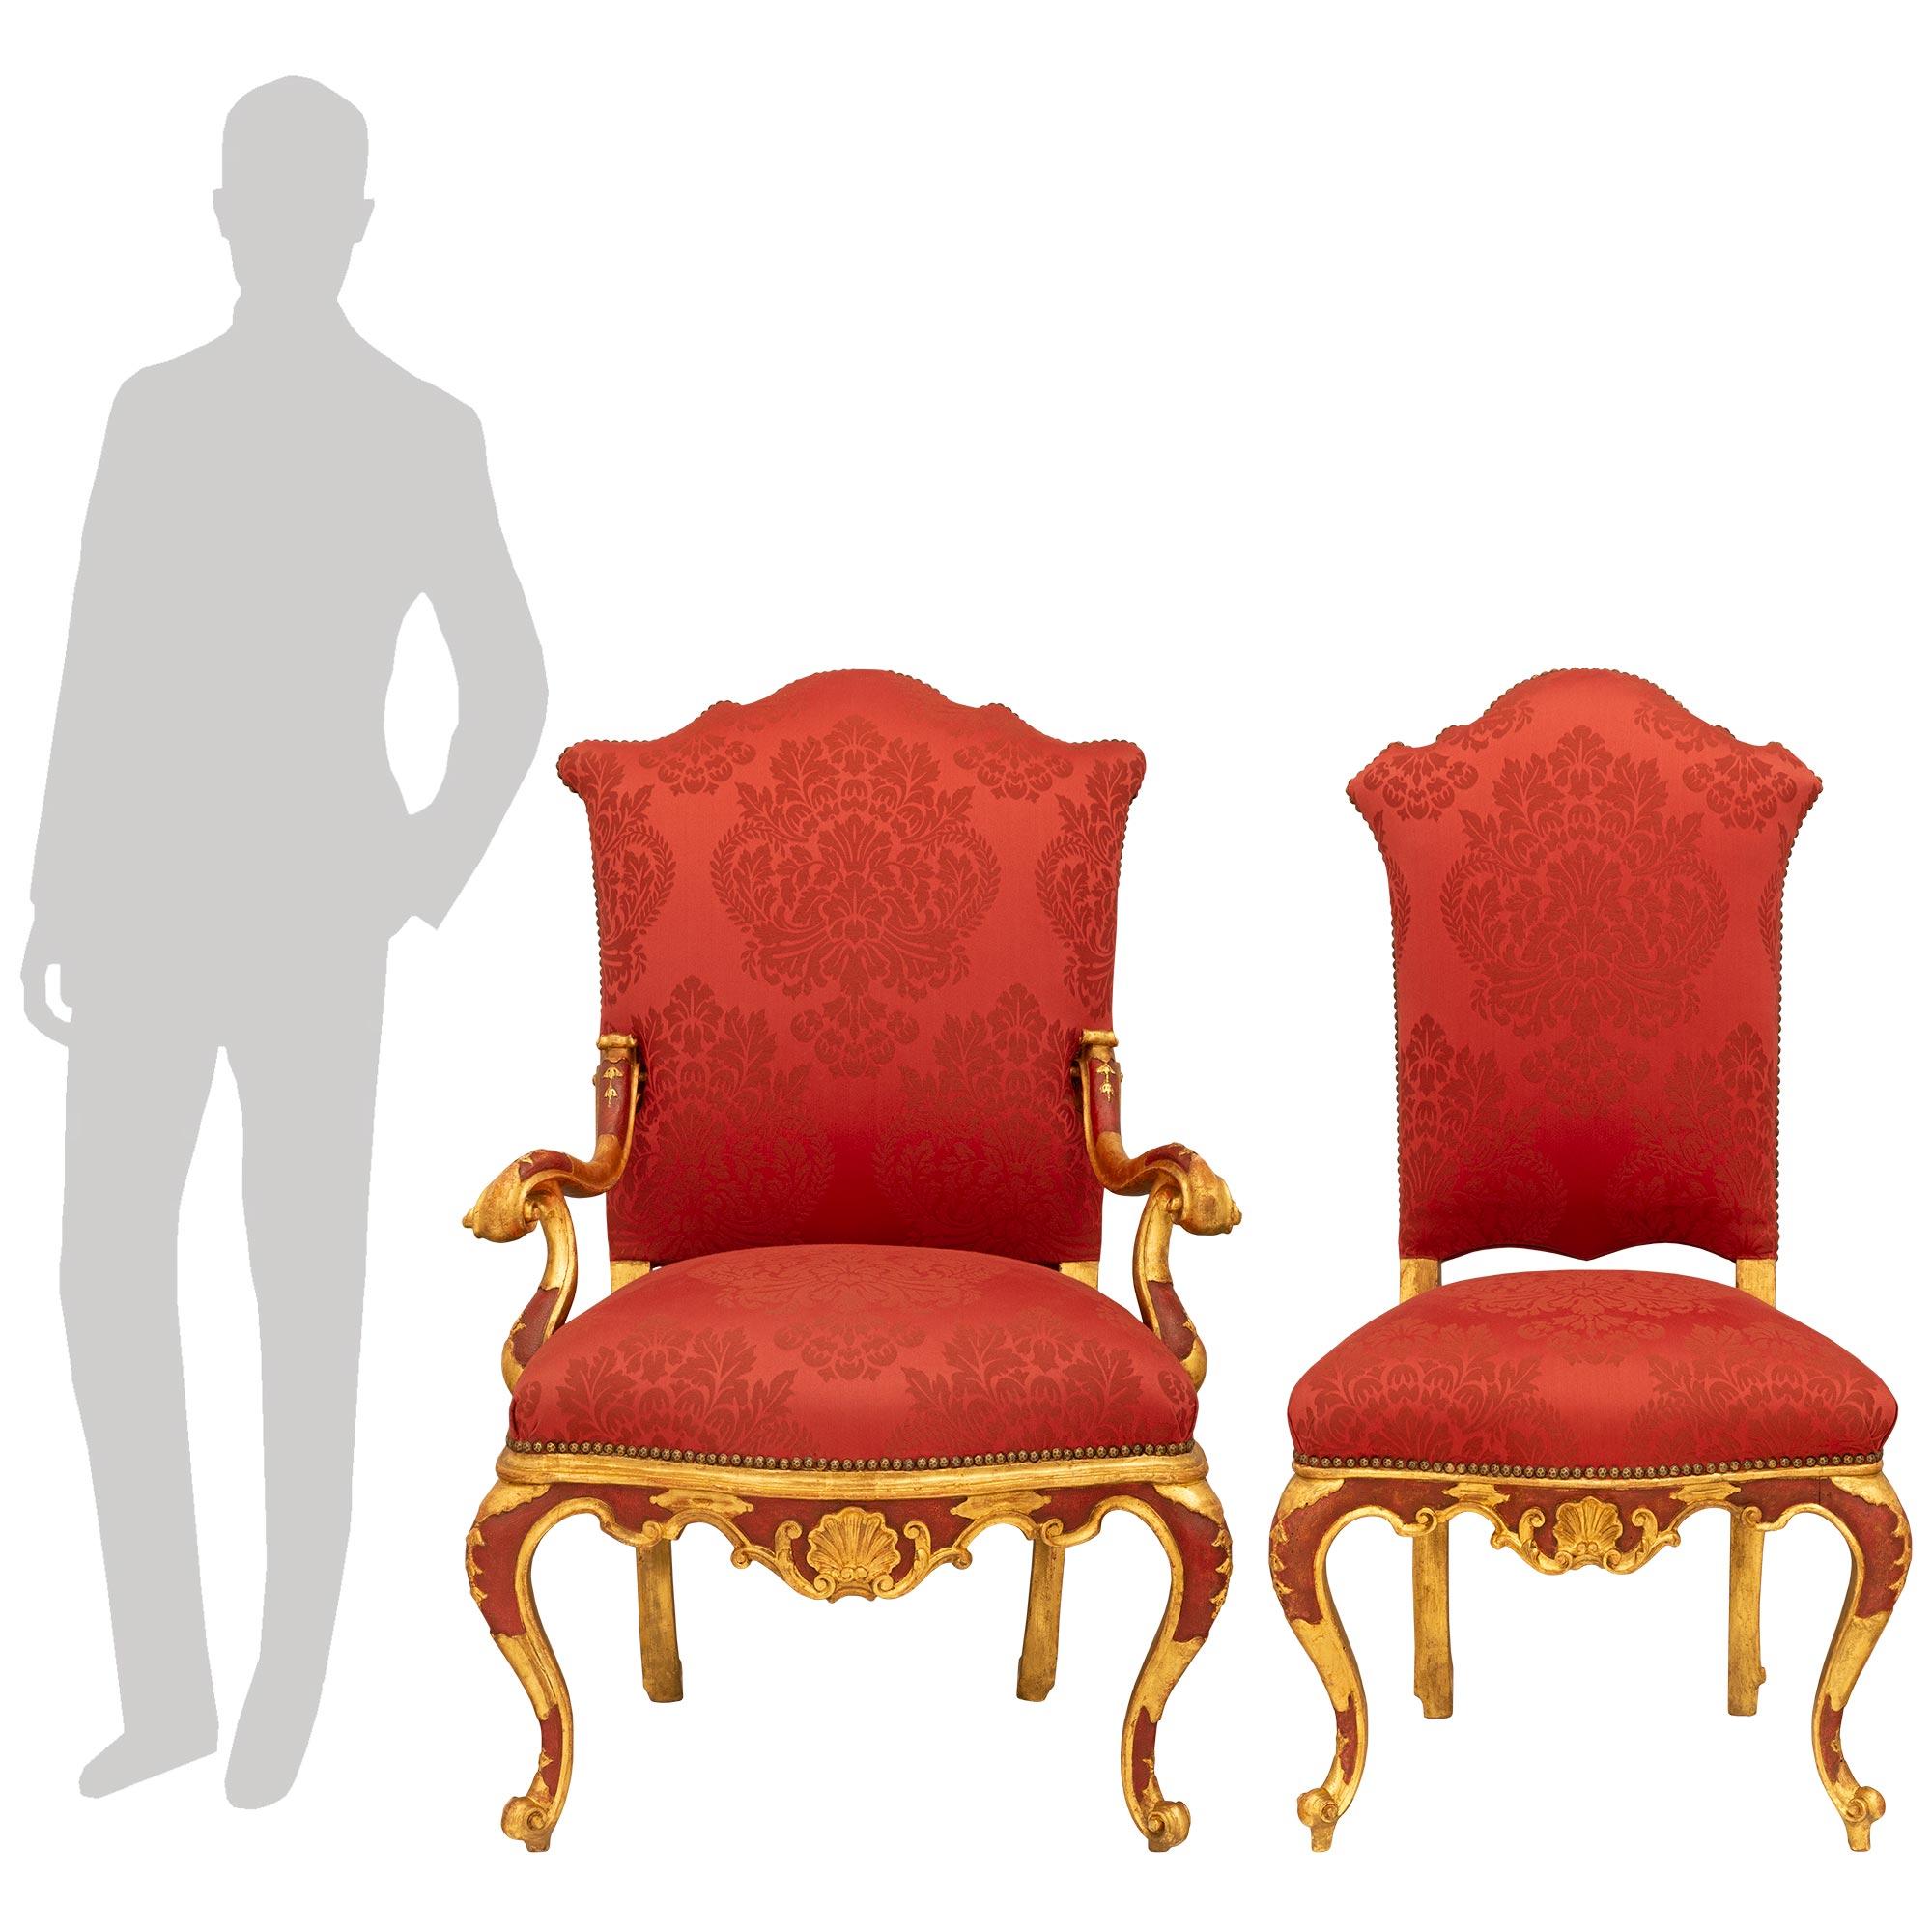 Un ensemble sensationnel de huit chaises de salle à manger italiennes du milieu du XVIIIe siècle en bois doré et polychrome vénitien. L'ensemble de six chaises d'appoint et de deux fauteuils repose élégamment sur des pieds cabriole ornés d'un